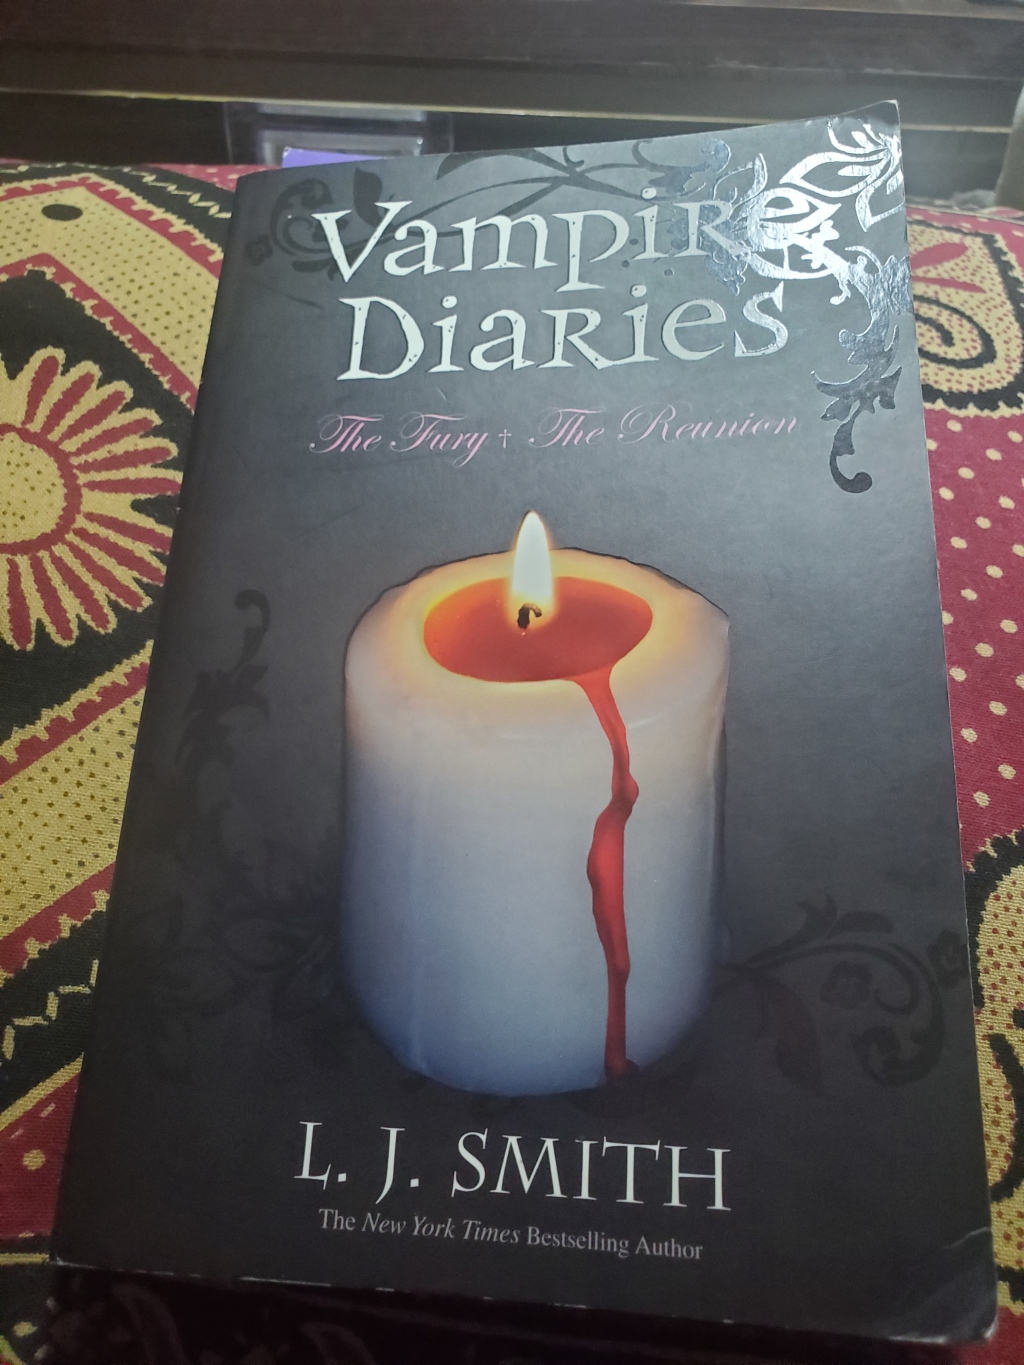 BOOK REVIEW: Vampire Diaries #3-4